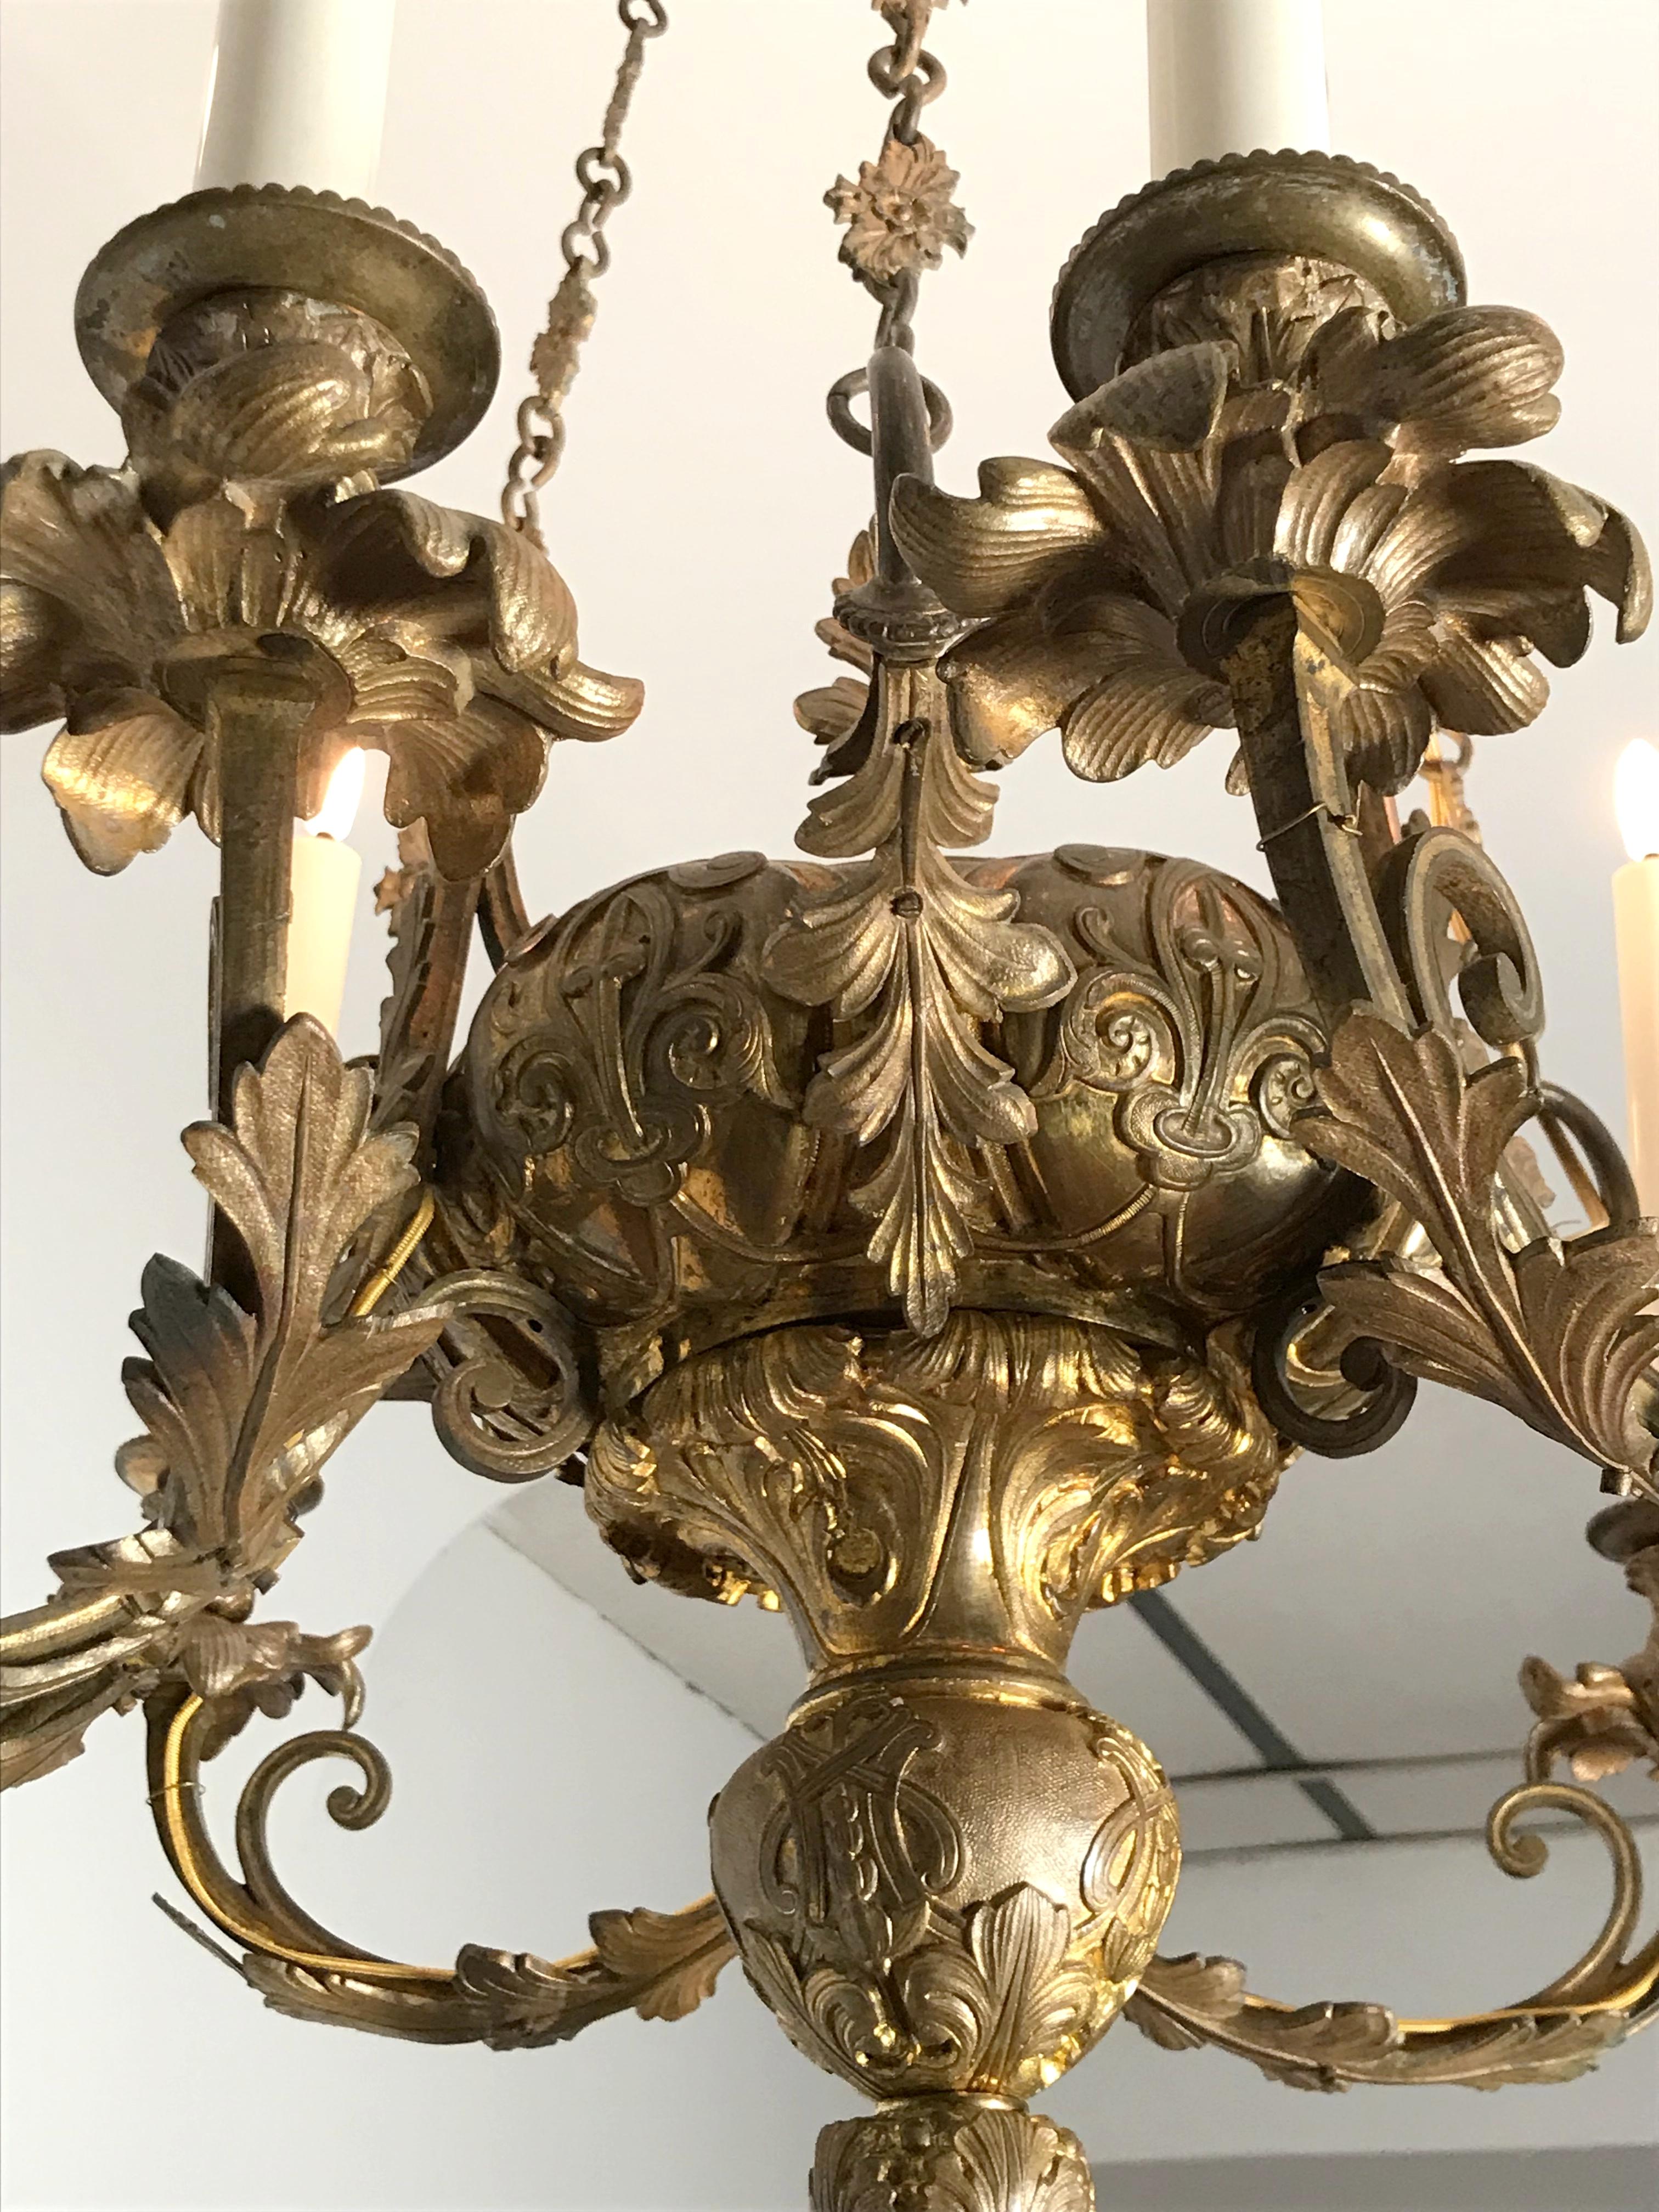 Schöner Kronleuchter aus fein gearbeiteter Bronze, Periode Napoleon III.
Armleuchter mit sechs Lichtern, bestückt mit 